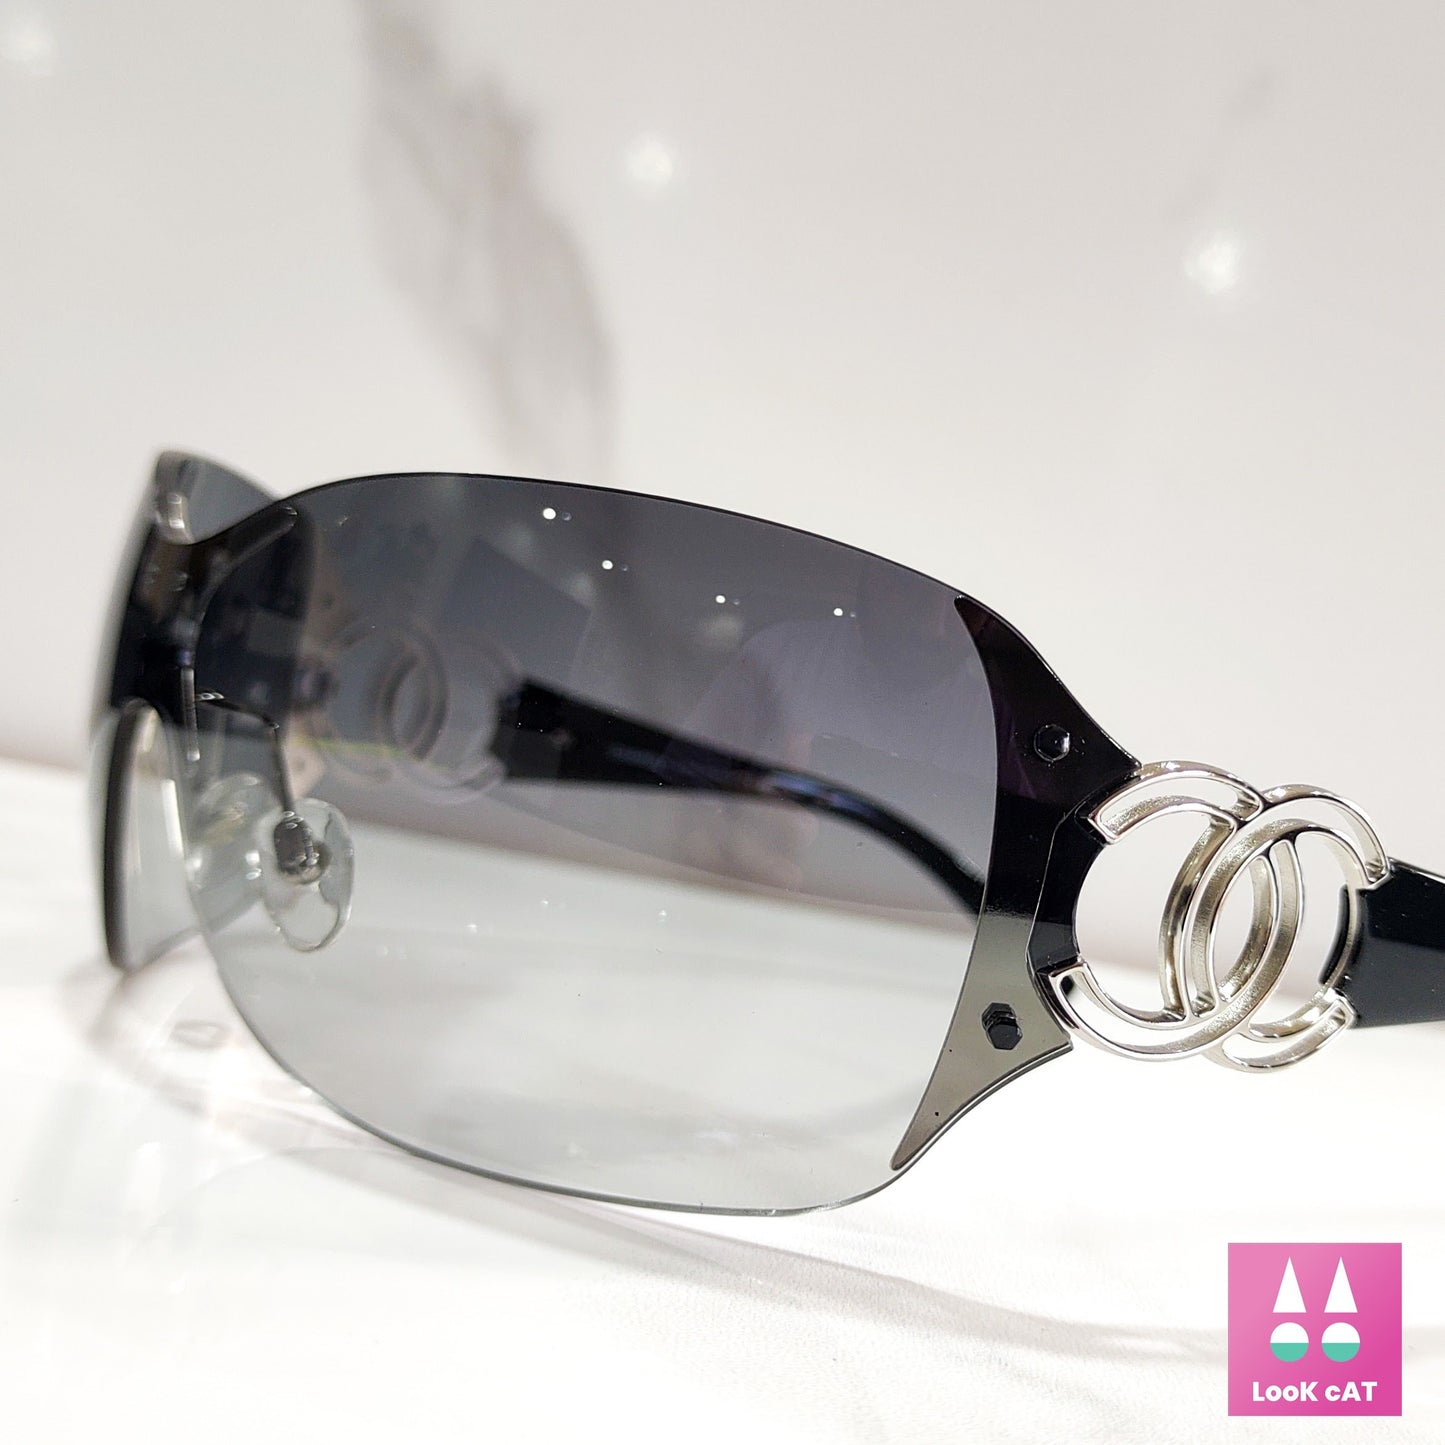 香奈儿太阳镜型号 4147 NOS wrap shield lunette brille shades y2k